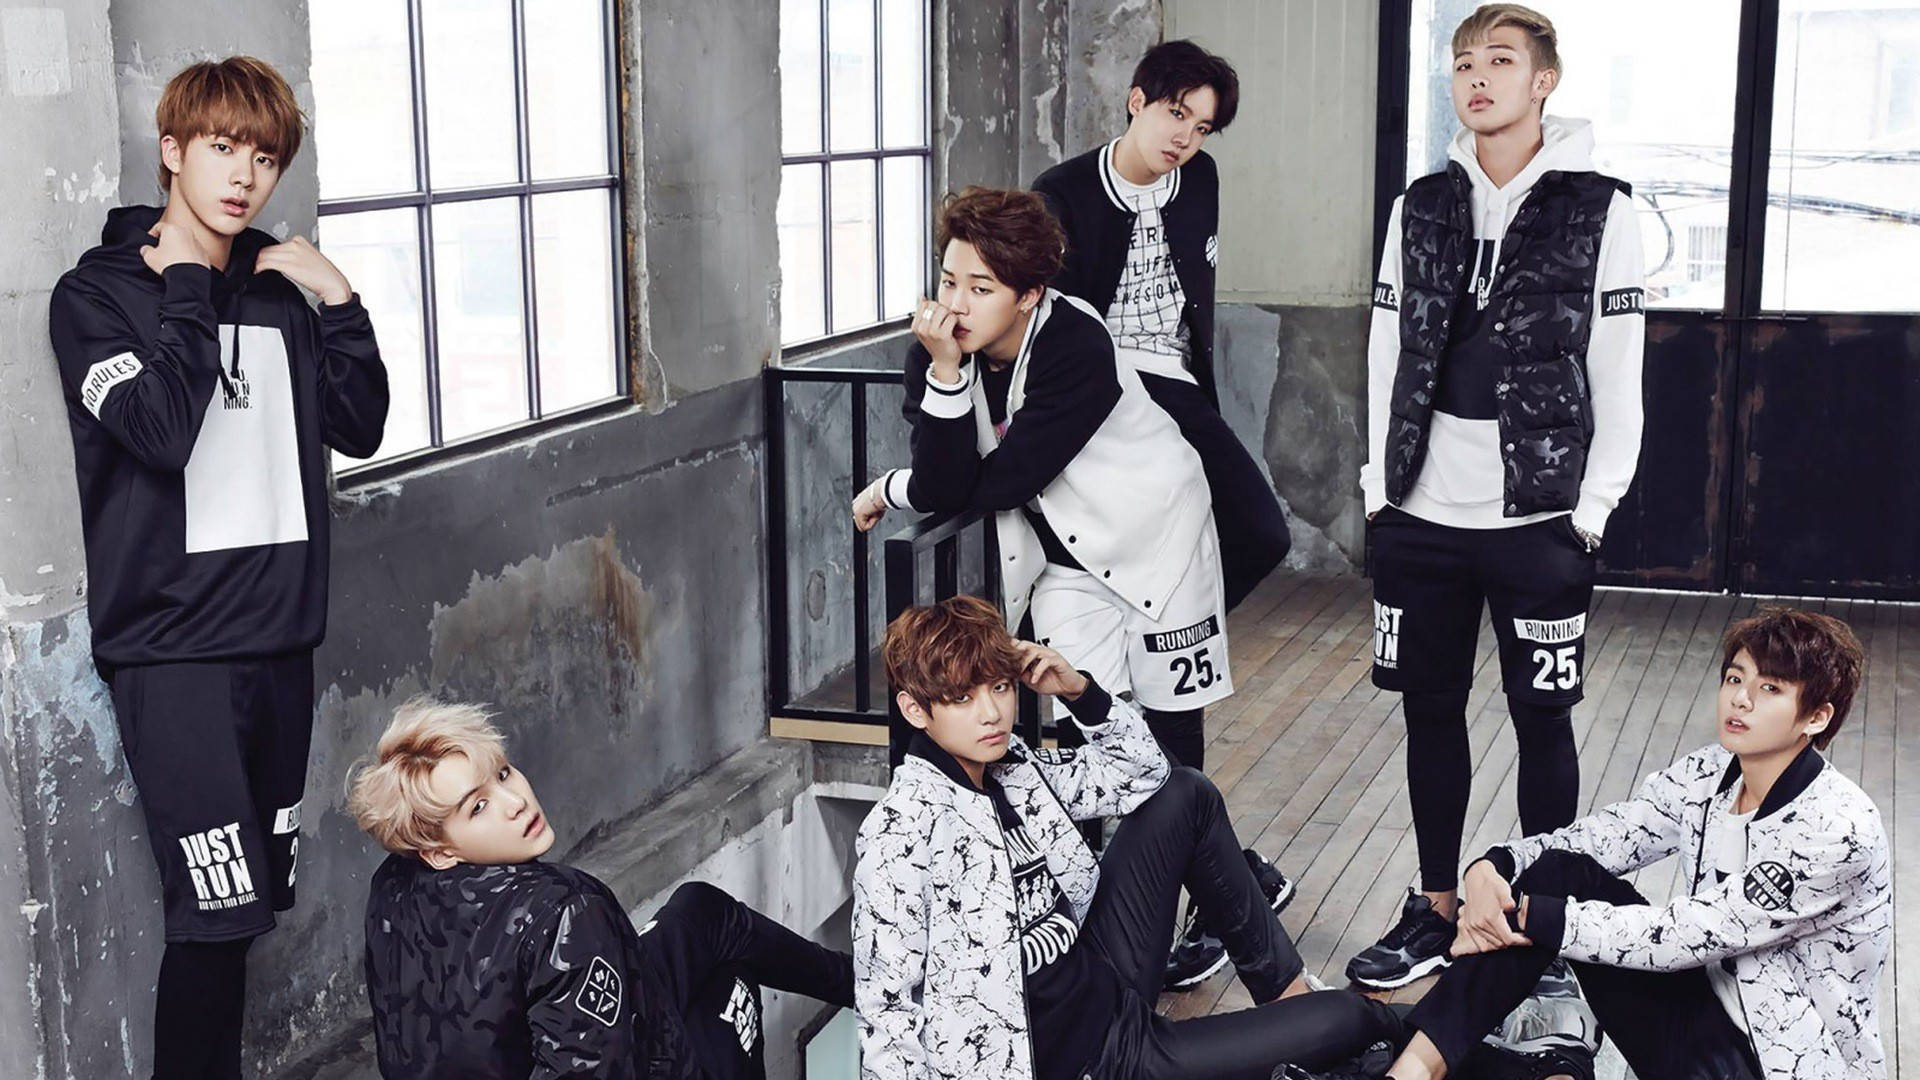 Download K Pop Group Bts For Star1 Wallpaper 